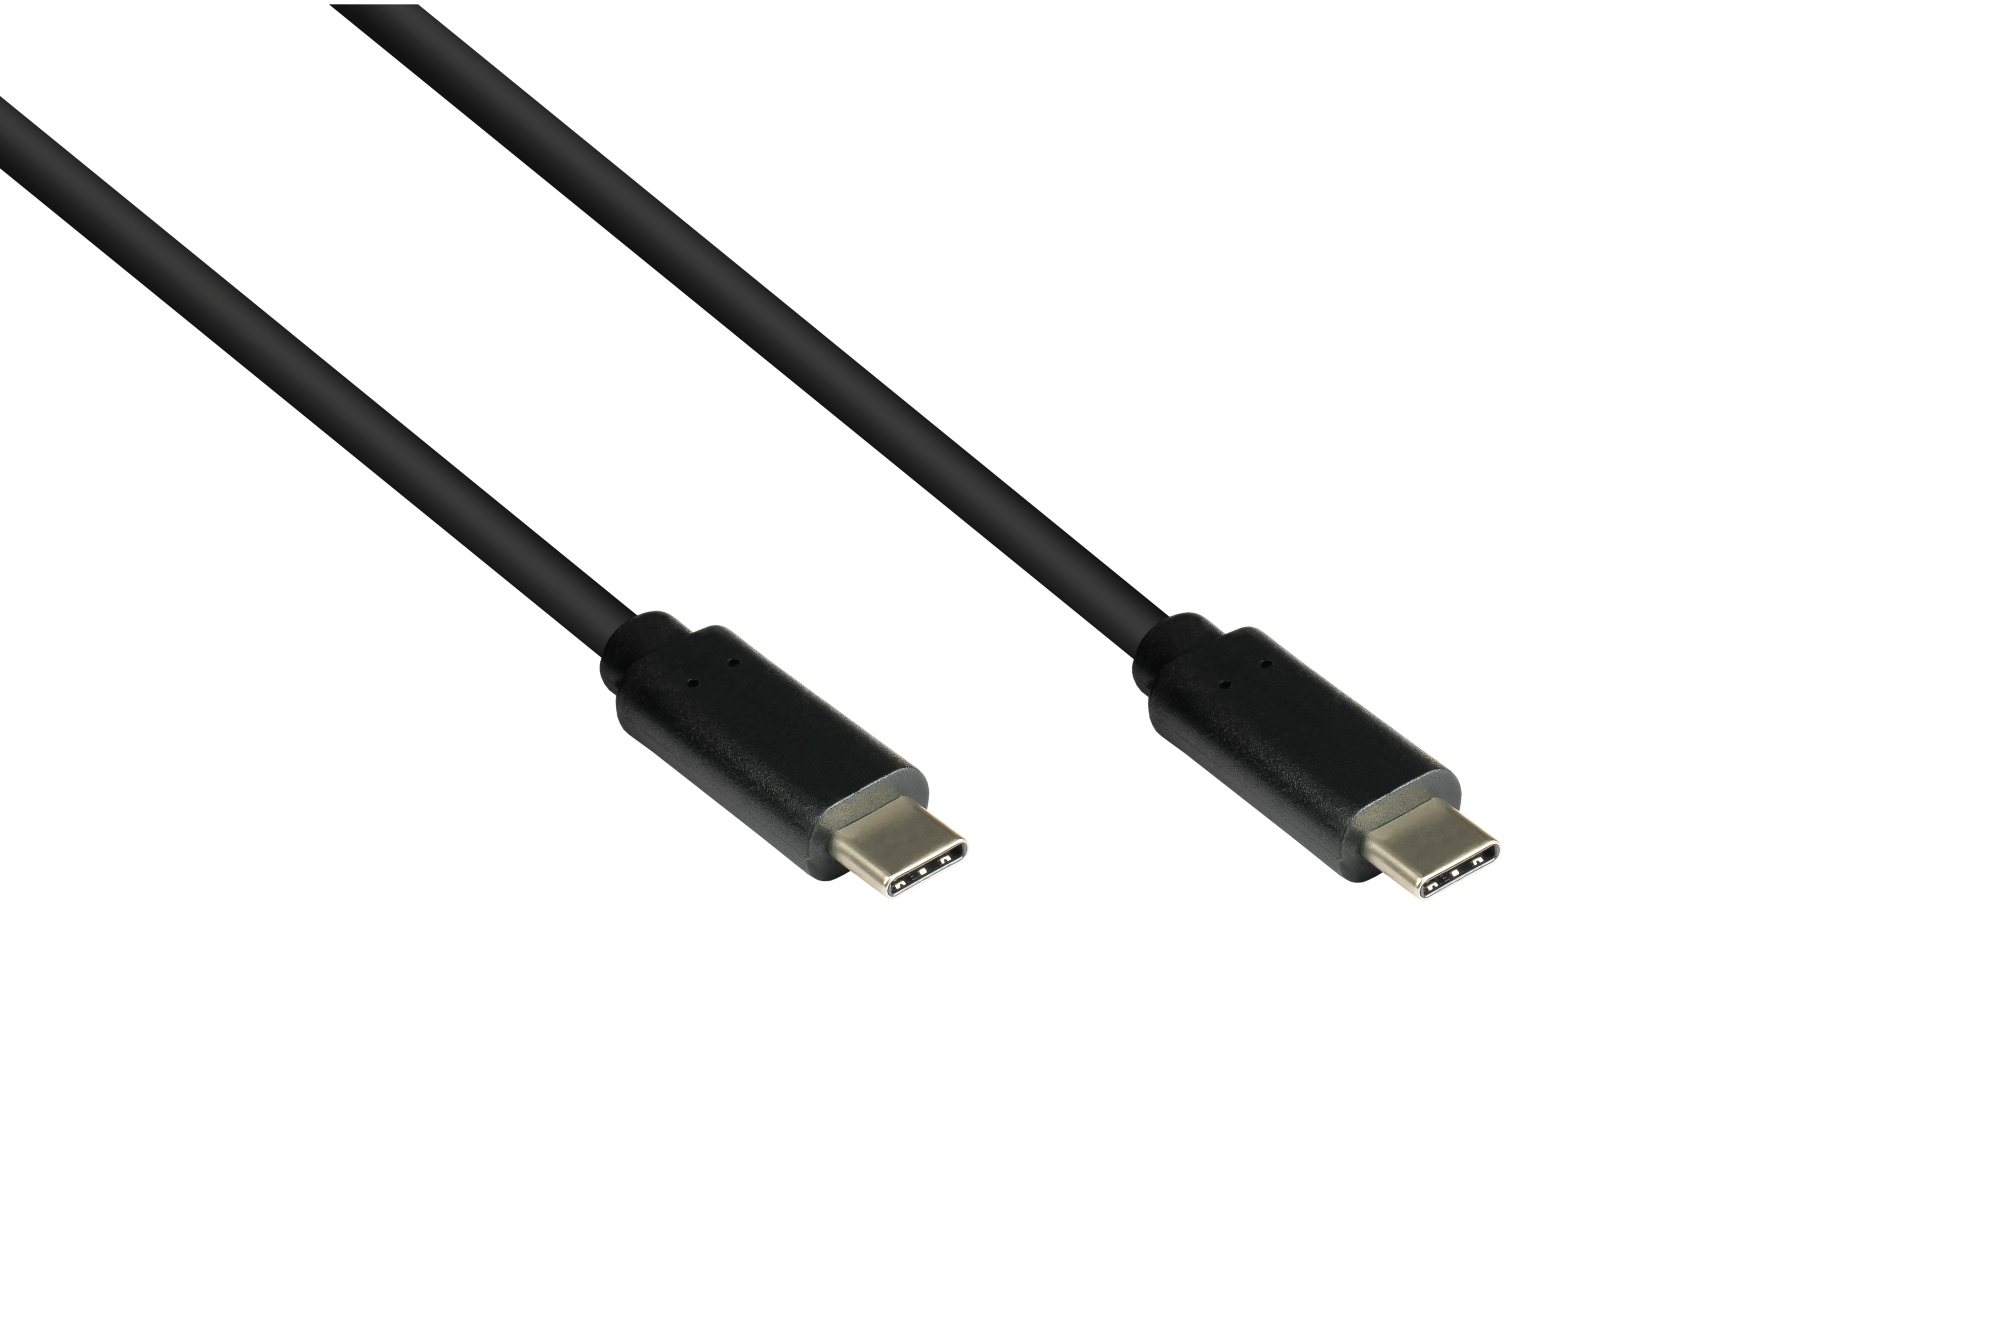 Lade- und Datenkabel USB 3.1 (Gen.1), USB-C™ Stecker beidseitig, CU, schwarz, 1m, Good Connections®